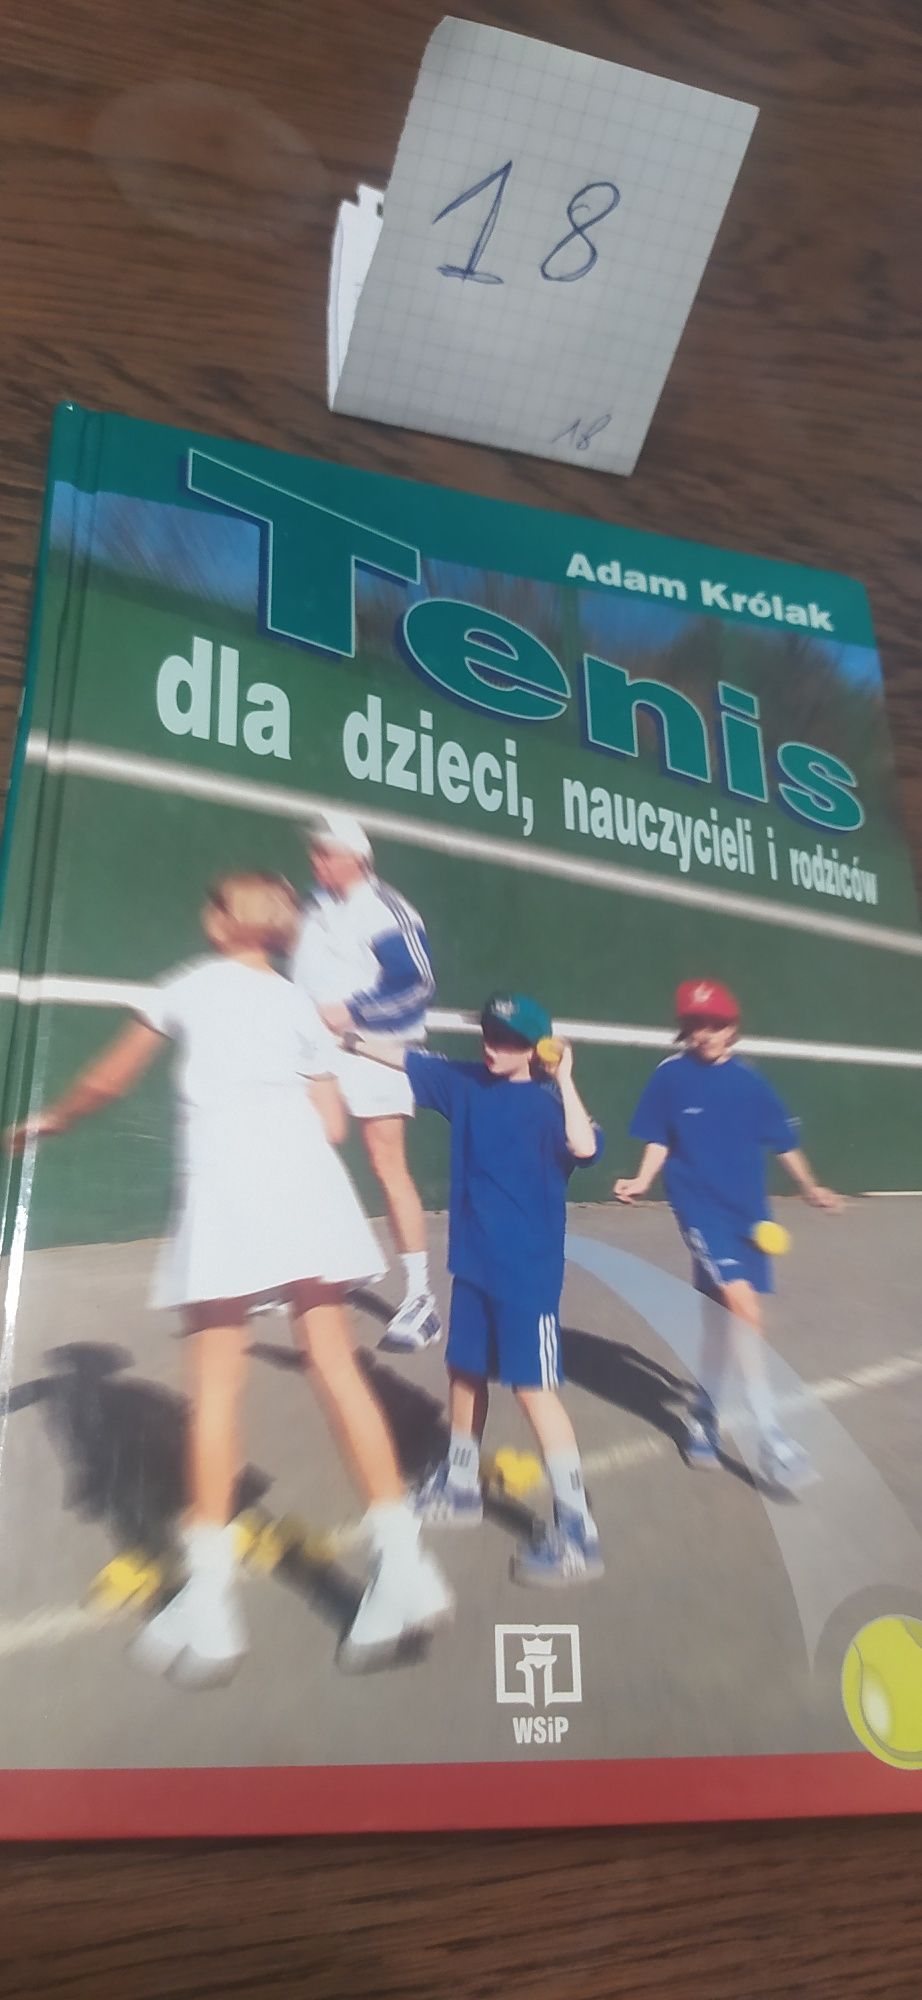 Tenis dla dzieci, nauczycieli i rodziców Adam Królak